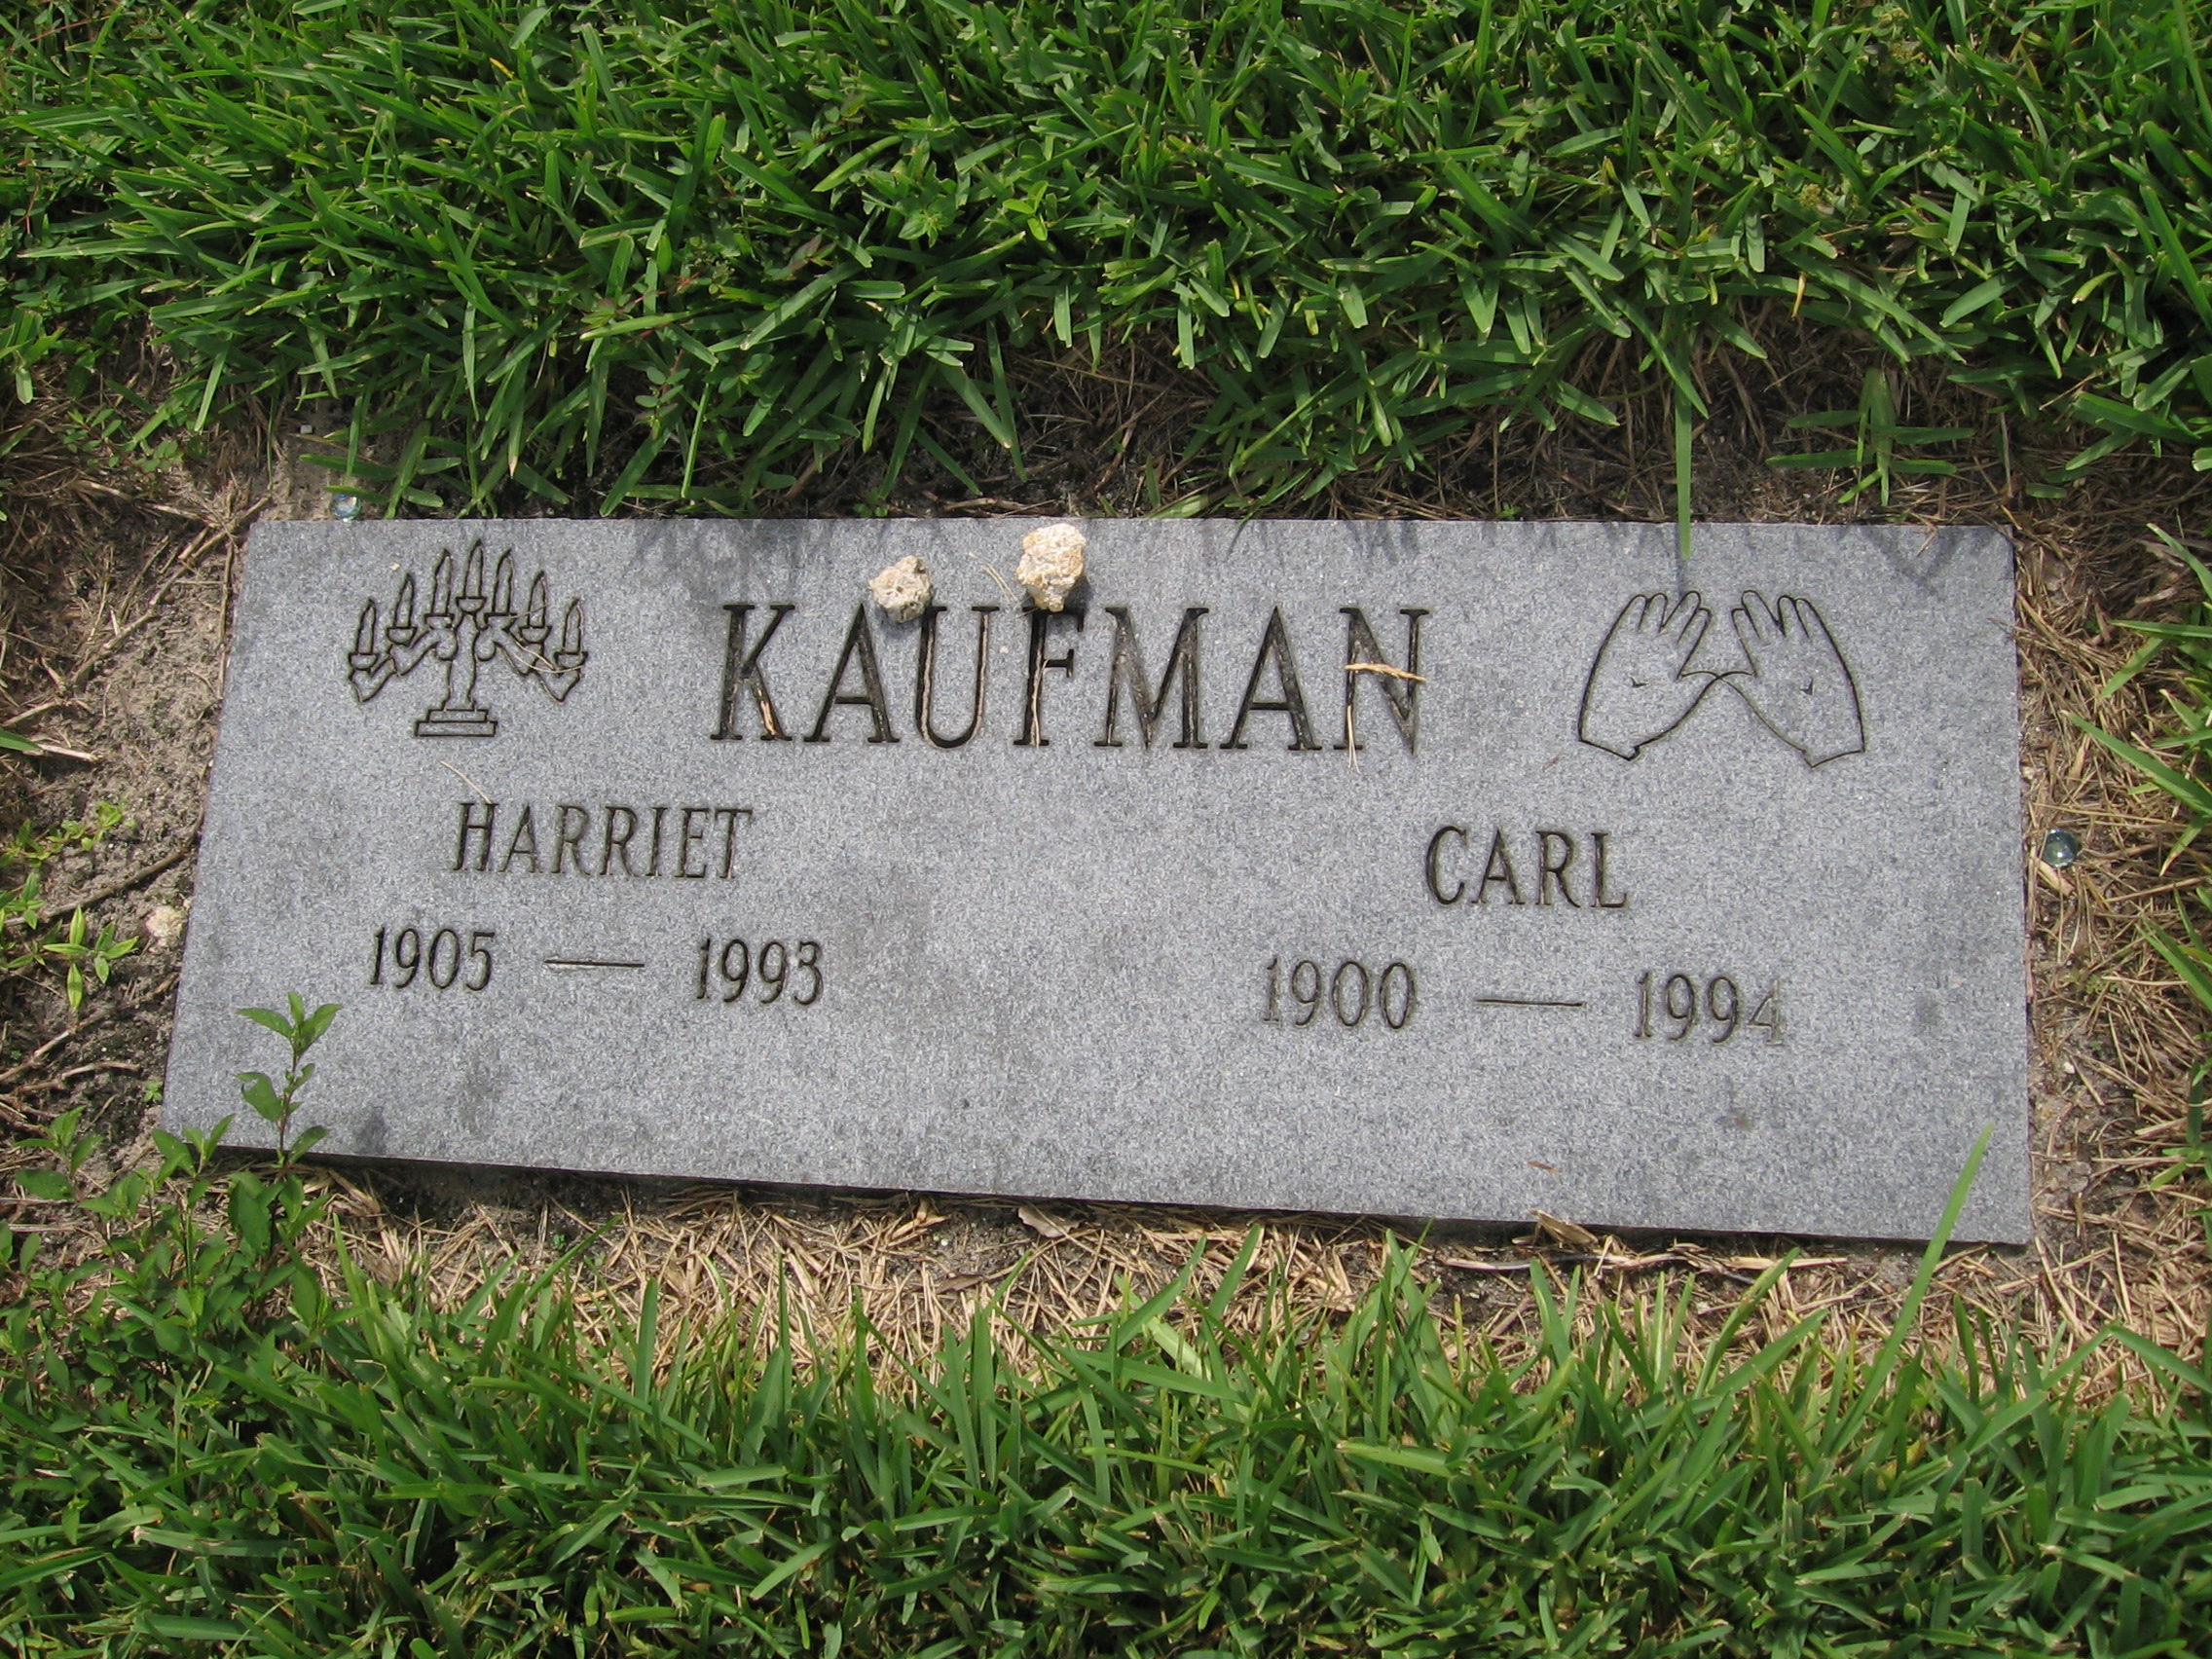 Harriet Kaufman